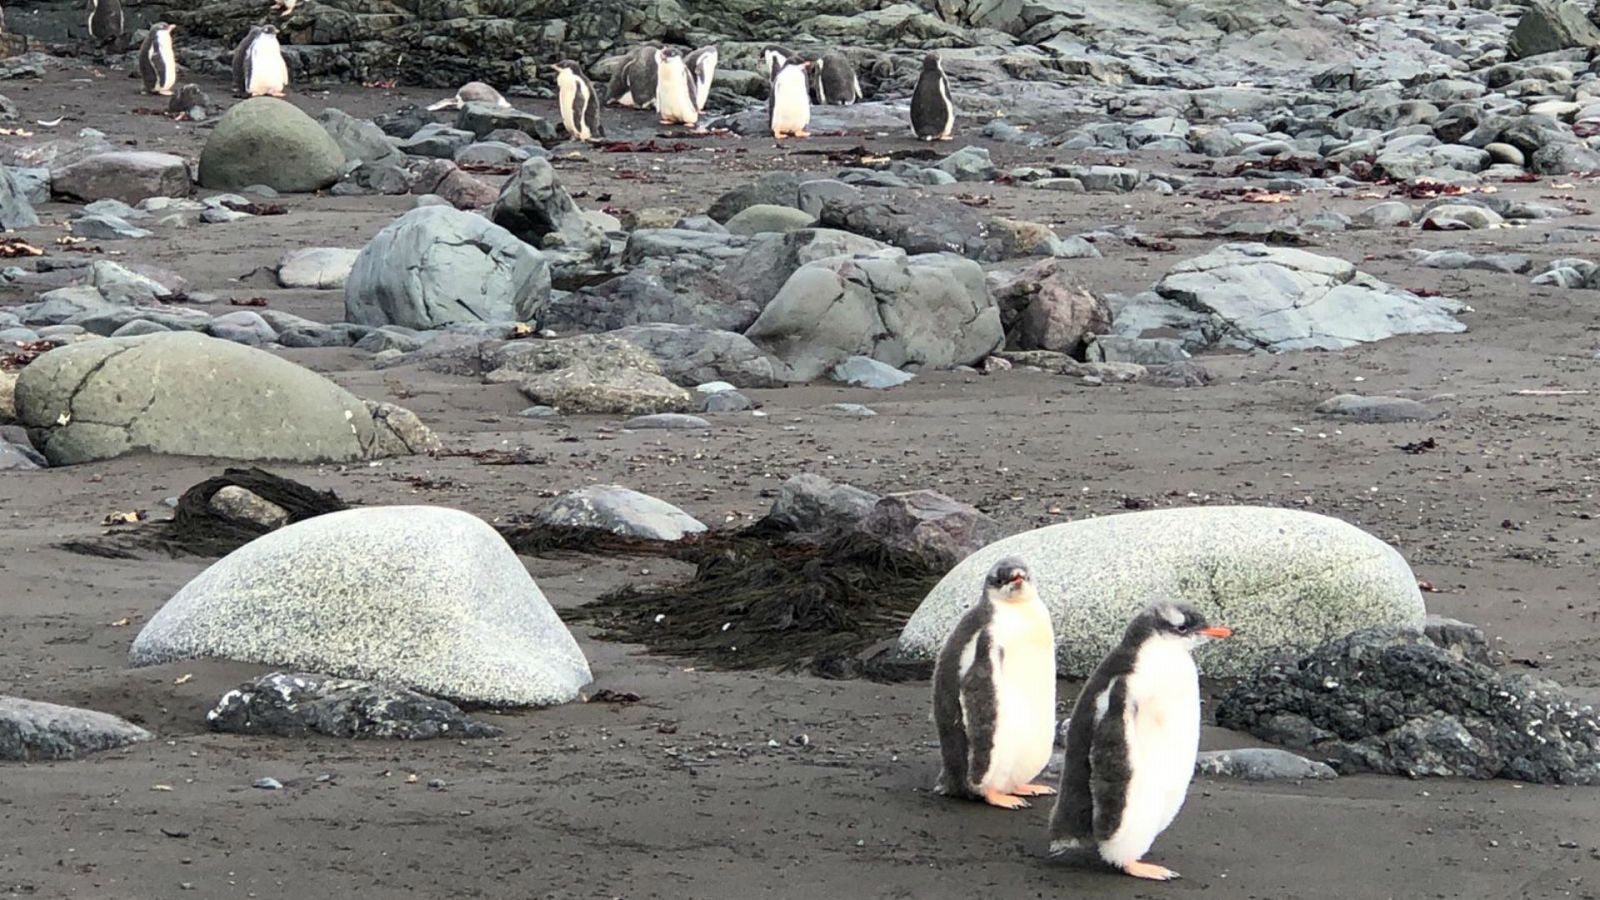 24 horas - Riba: "Las condiciones de vida en la Antártida son muy cambiantes en muy poco tiempo" - Escuchar ahora